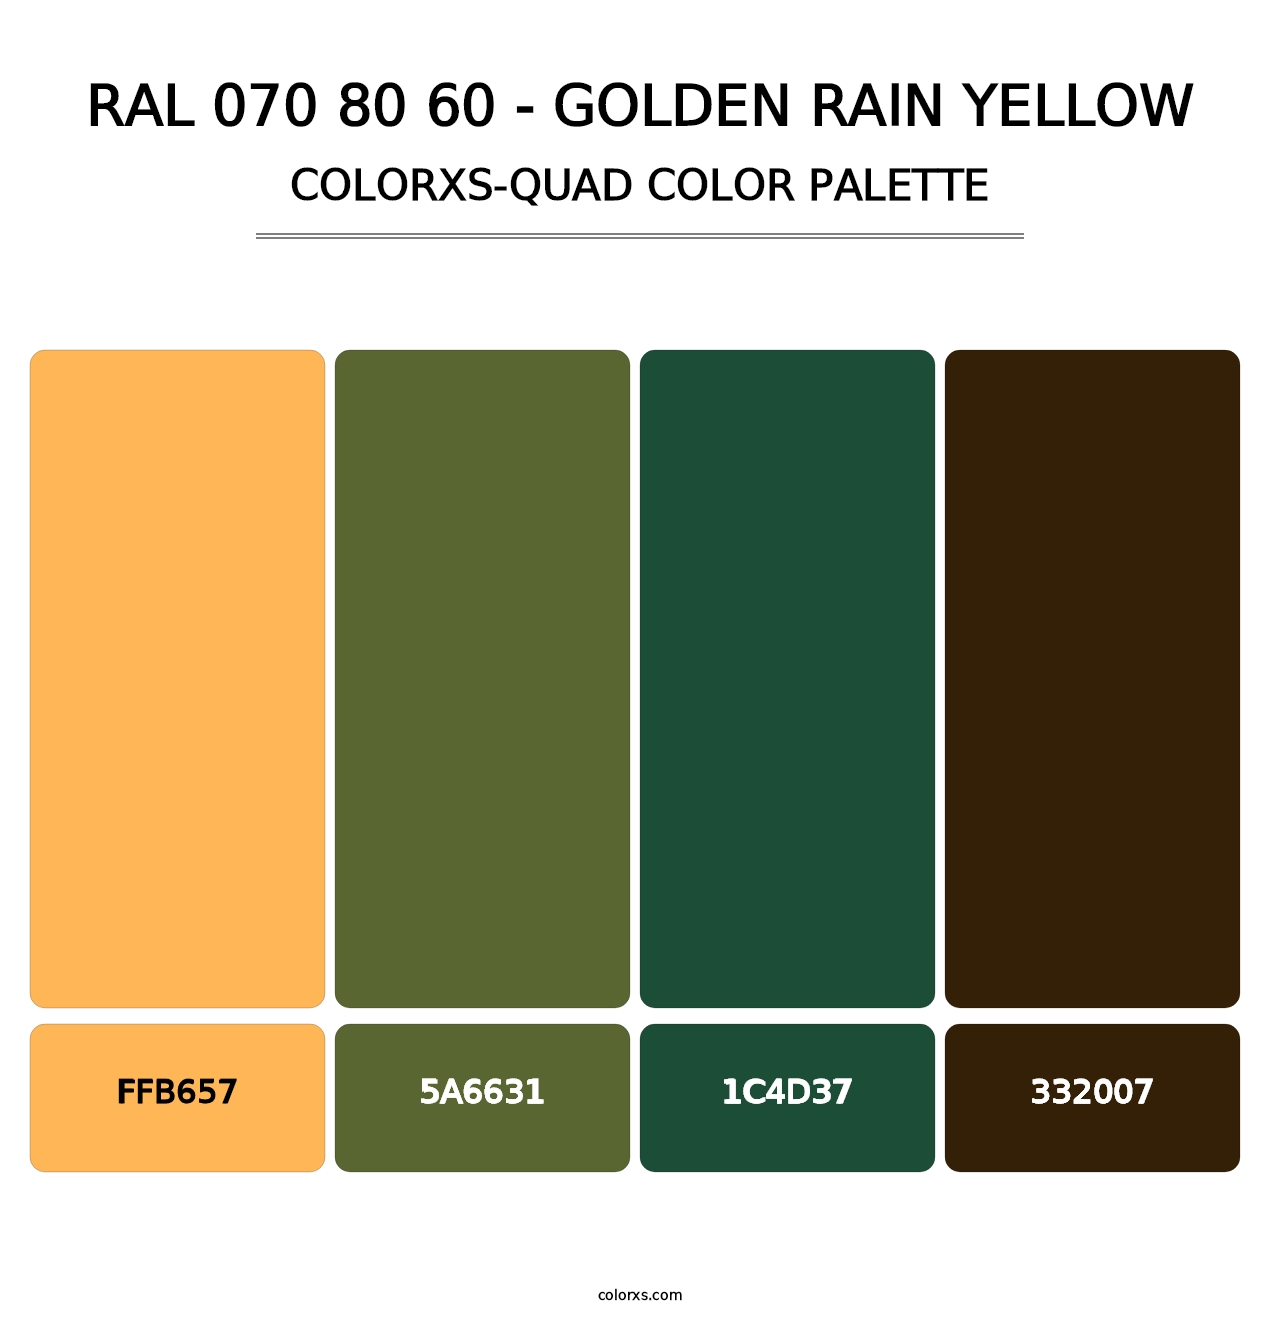 RAL 070 80 60 - Golden Rain Yellow - Colorxs Quad Palette